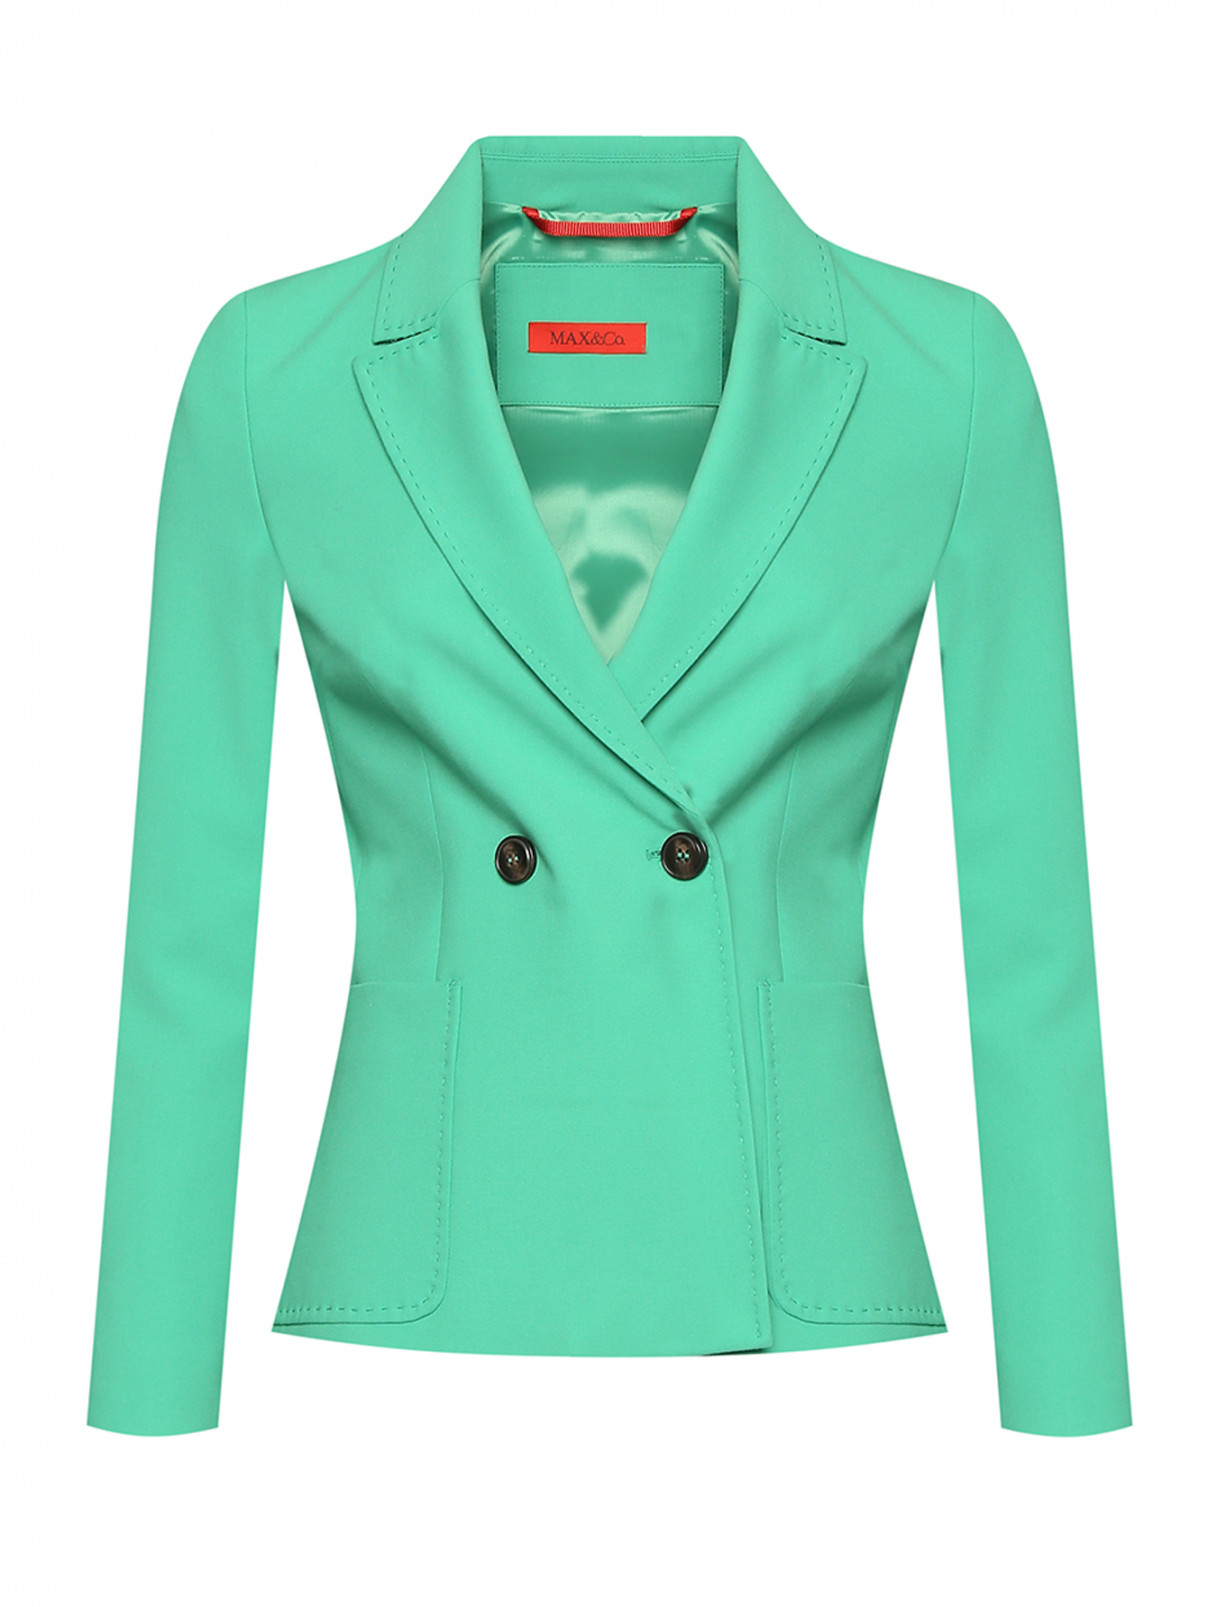 Двубортный жакет с карманами Max&Co  –  Общий вид  – Цвет:  Зеленый